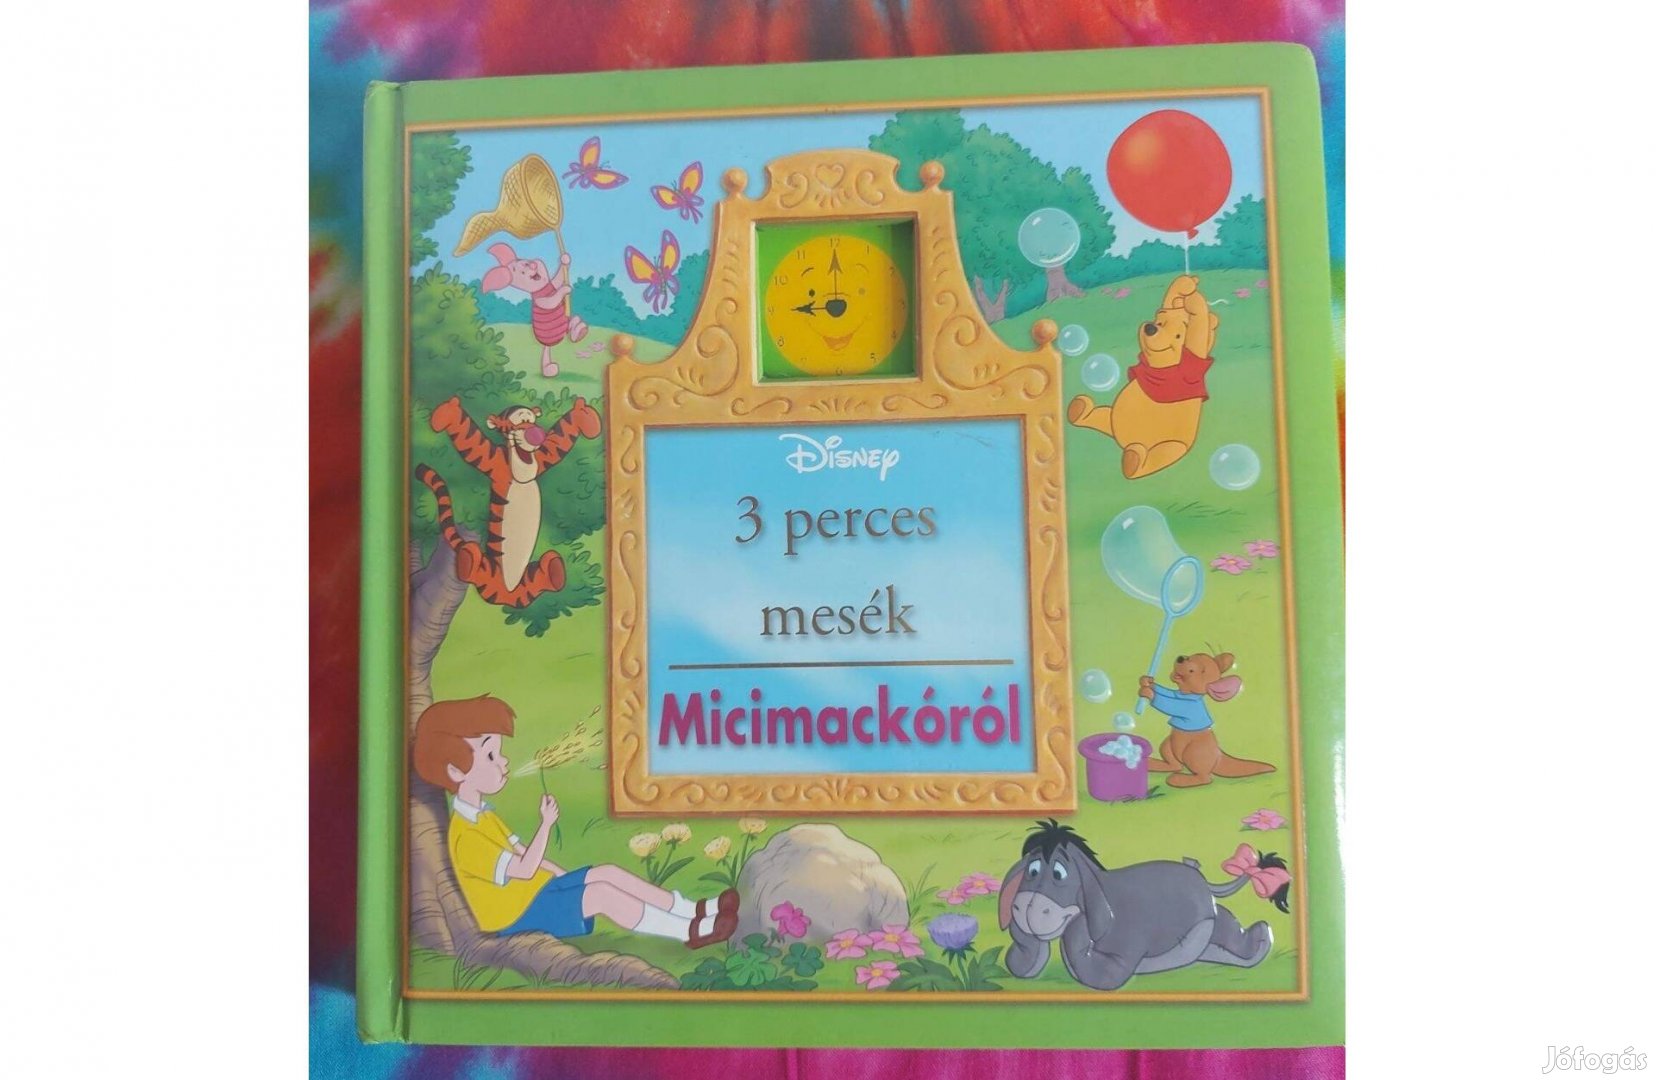 Disney 3 perces mesék Micimackóról újszerű mesekönyv könyv Mici mackó